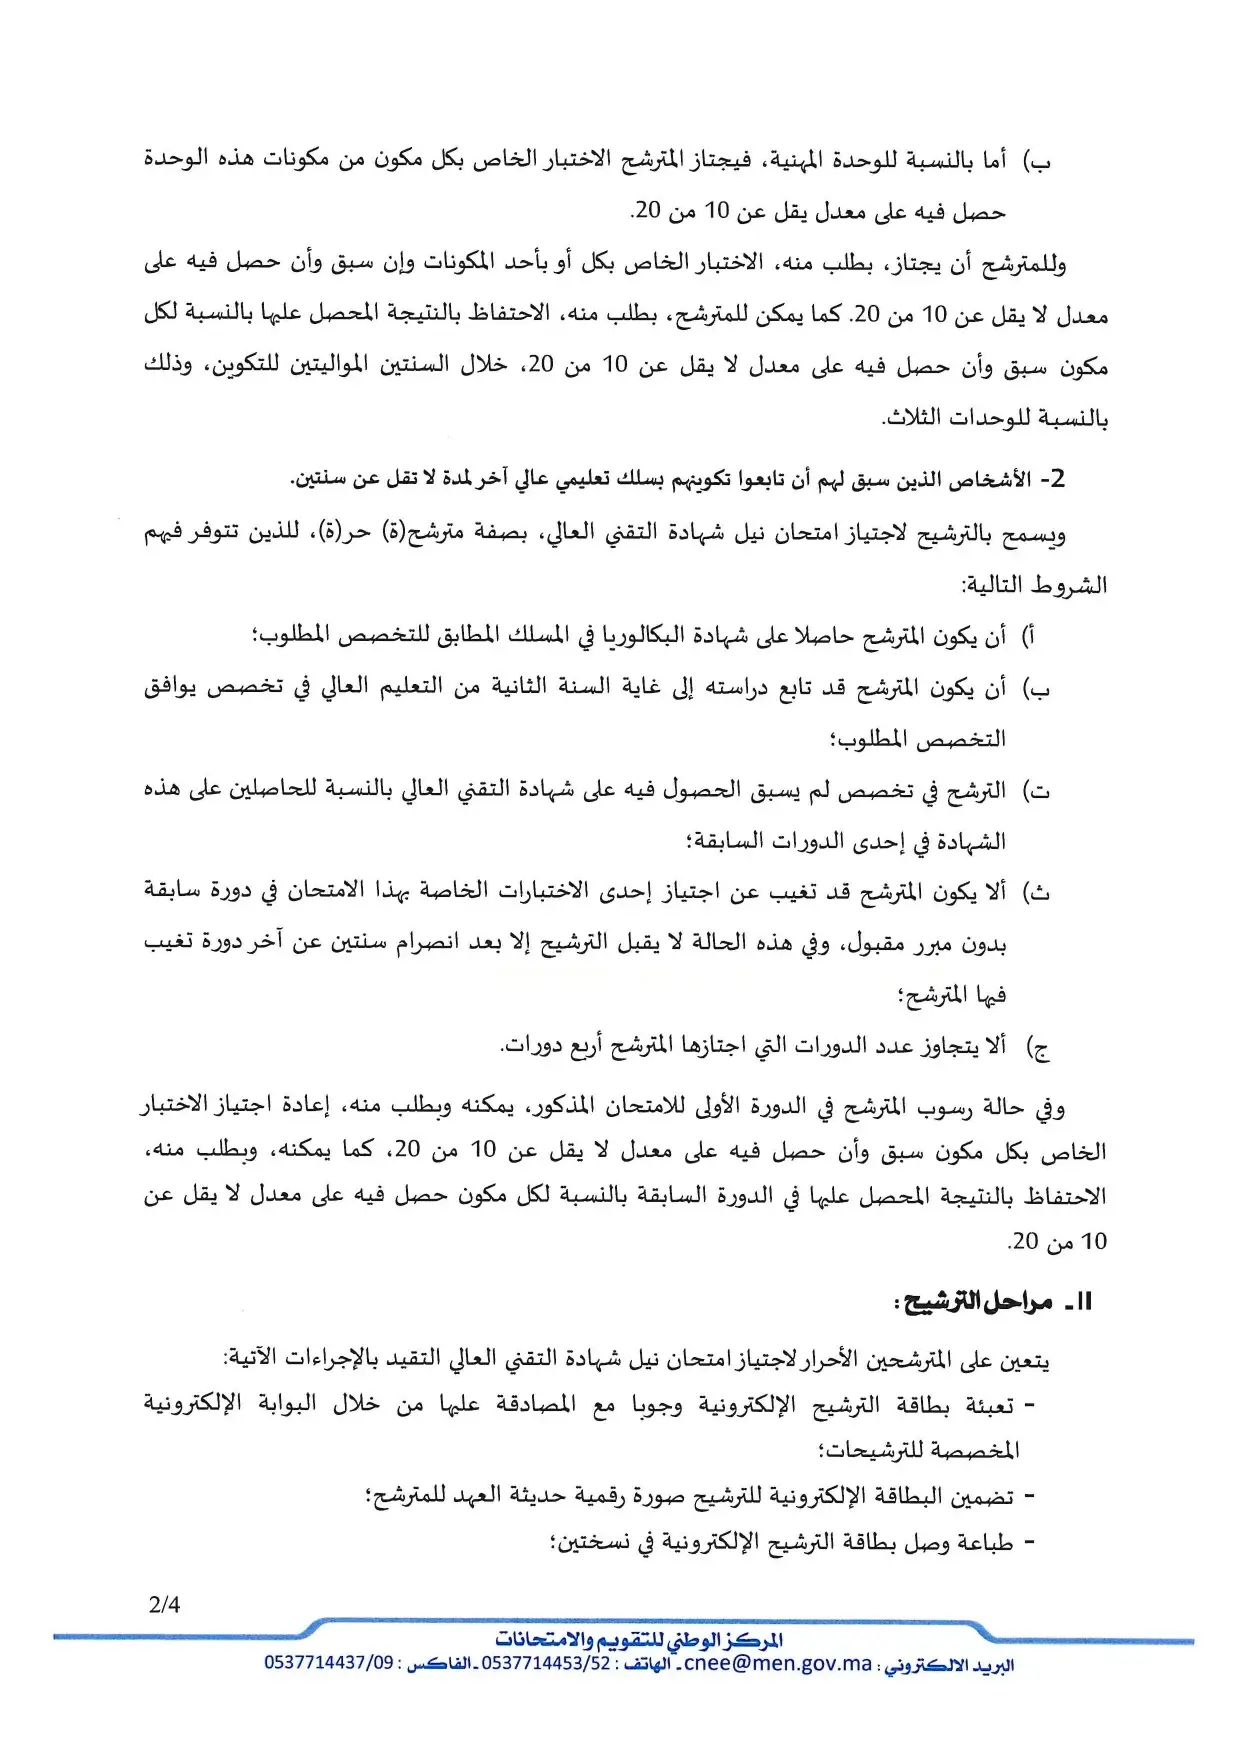 Inscription BTS Libre 2023 Maroc